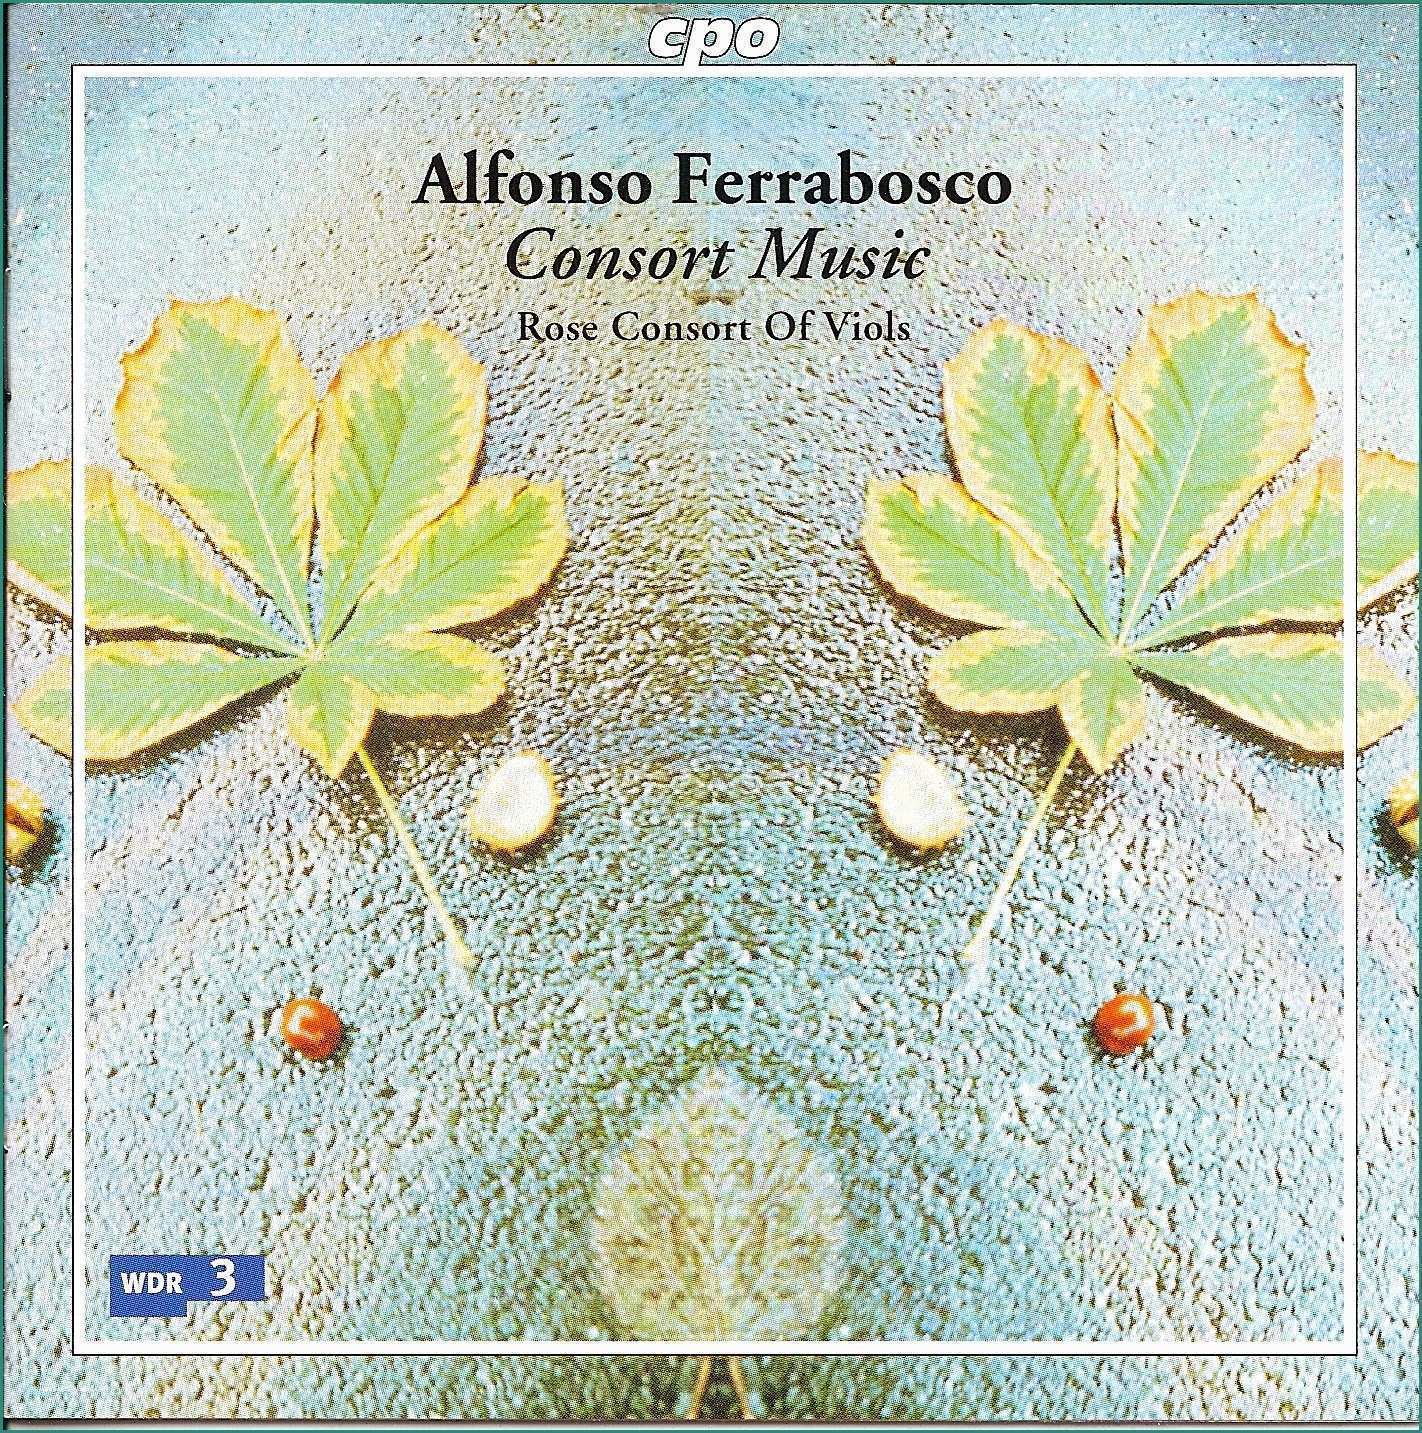 Suite A Tema torino E Kammermusikkammer Alfonso Ferrabosco Consort Music Rose Consort